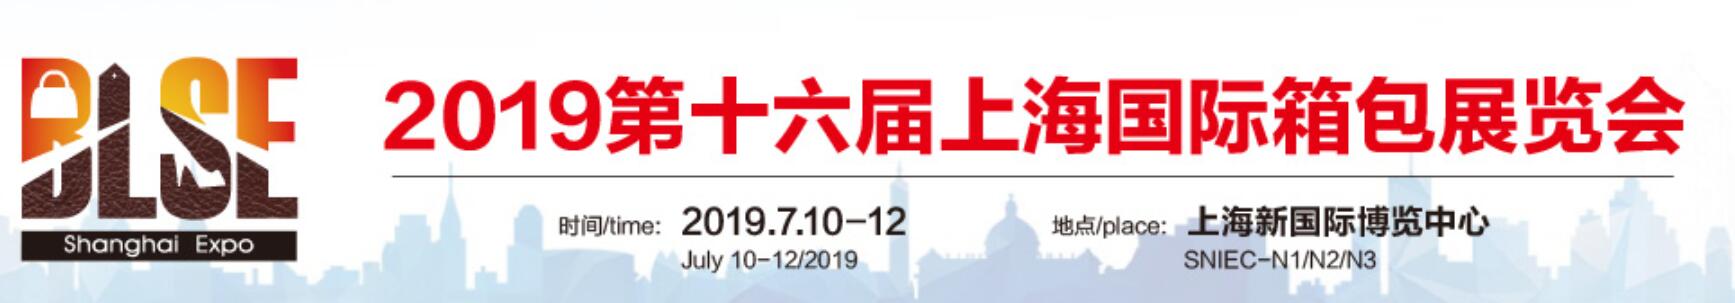 2019中国箱包展会